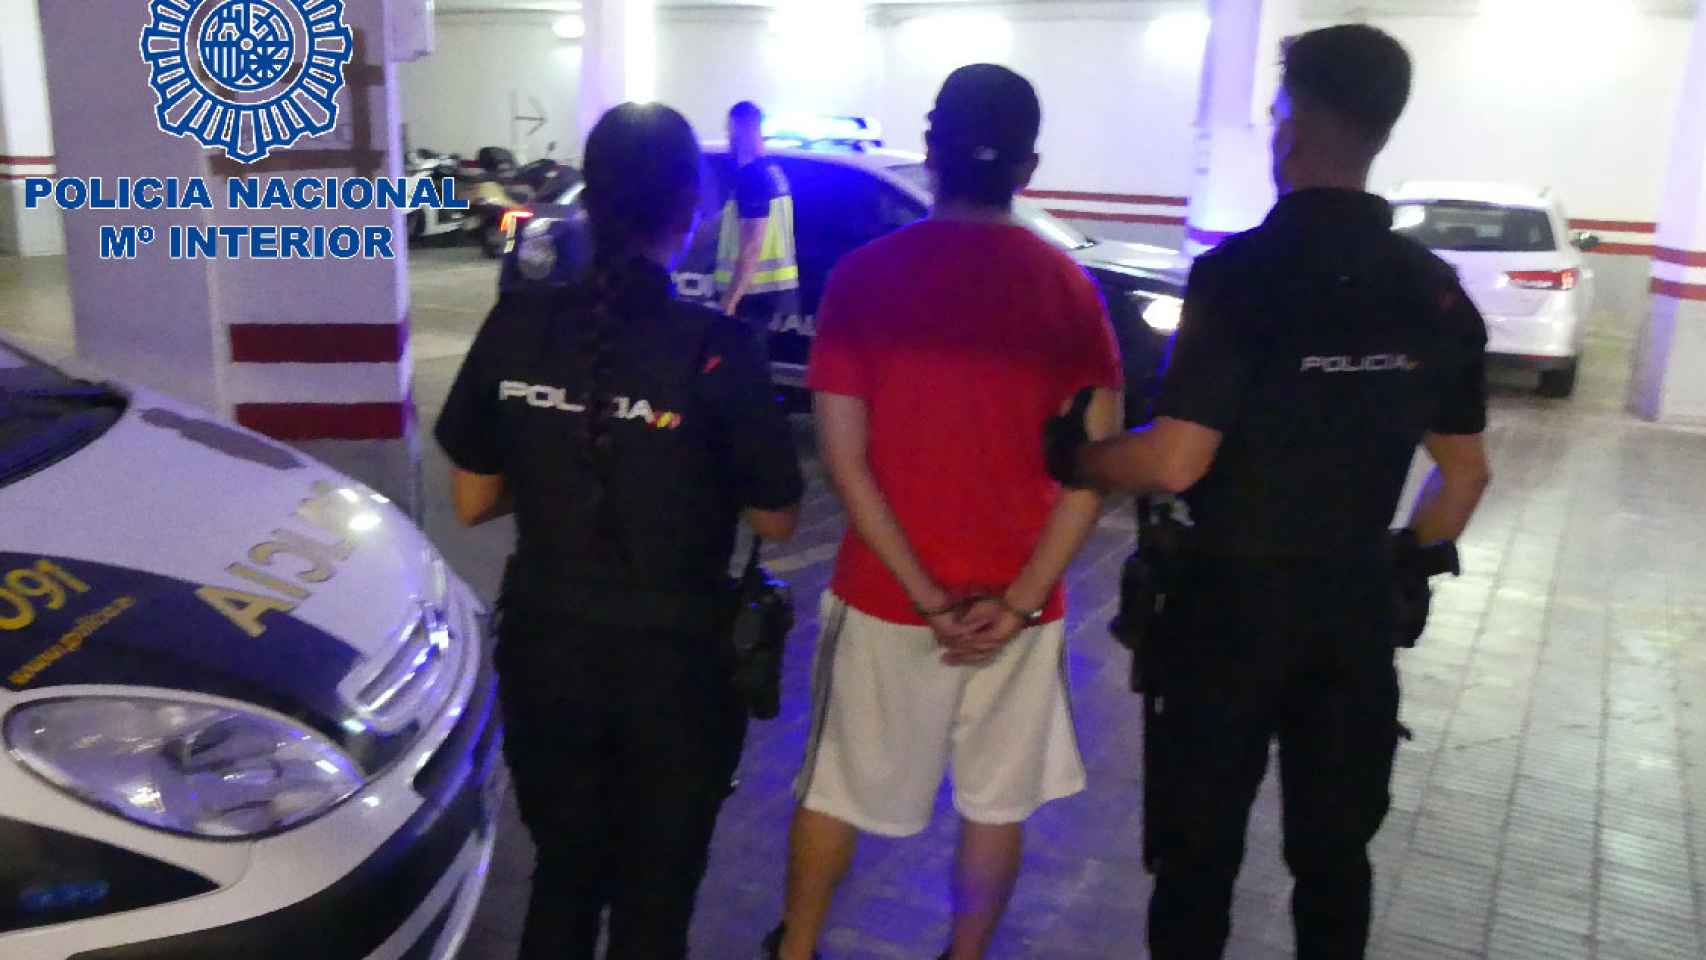 Dos agentes de la policía escoltan al depredador sexual condenado a 113 años de cárcel, que ha sido expulsado a su país de origen / CNP